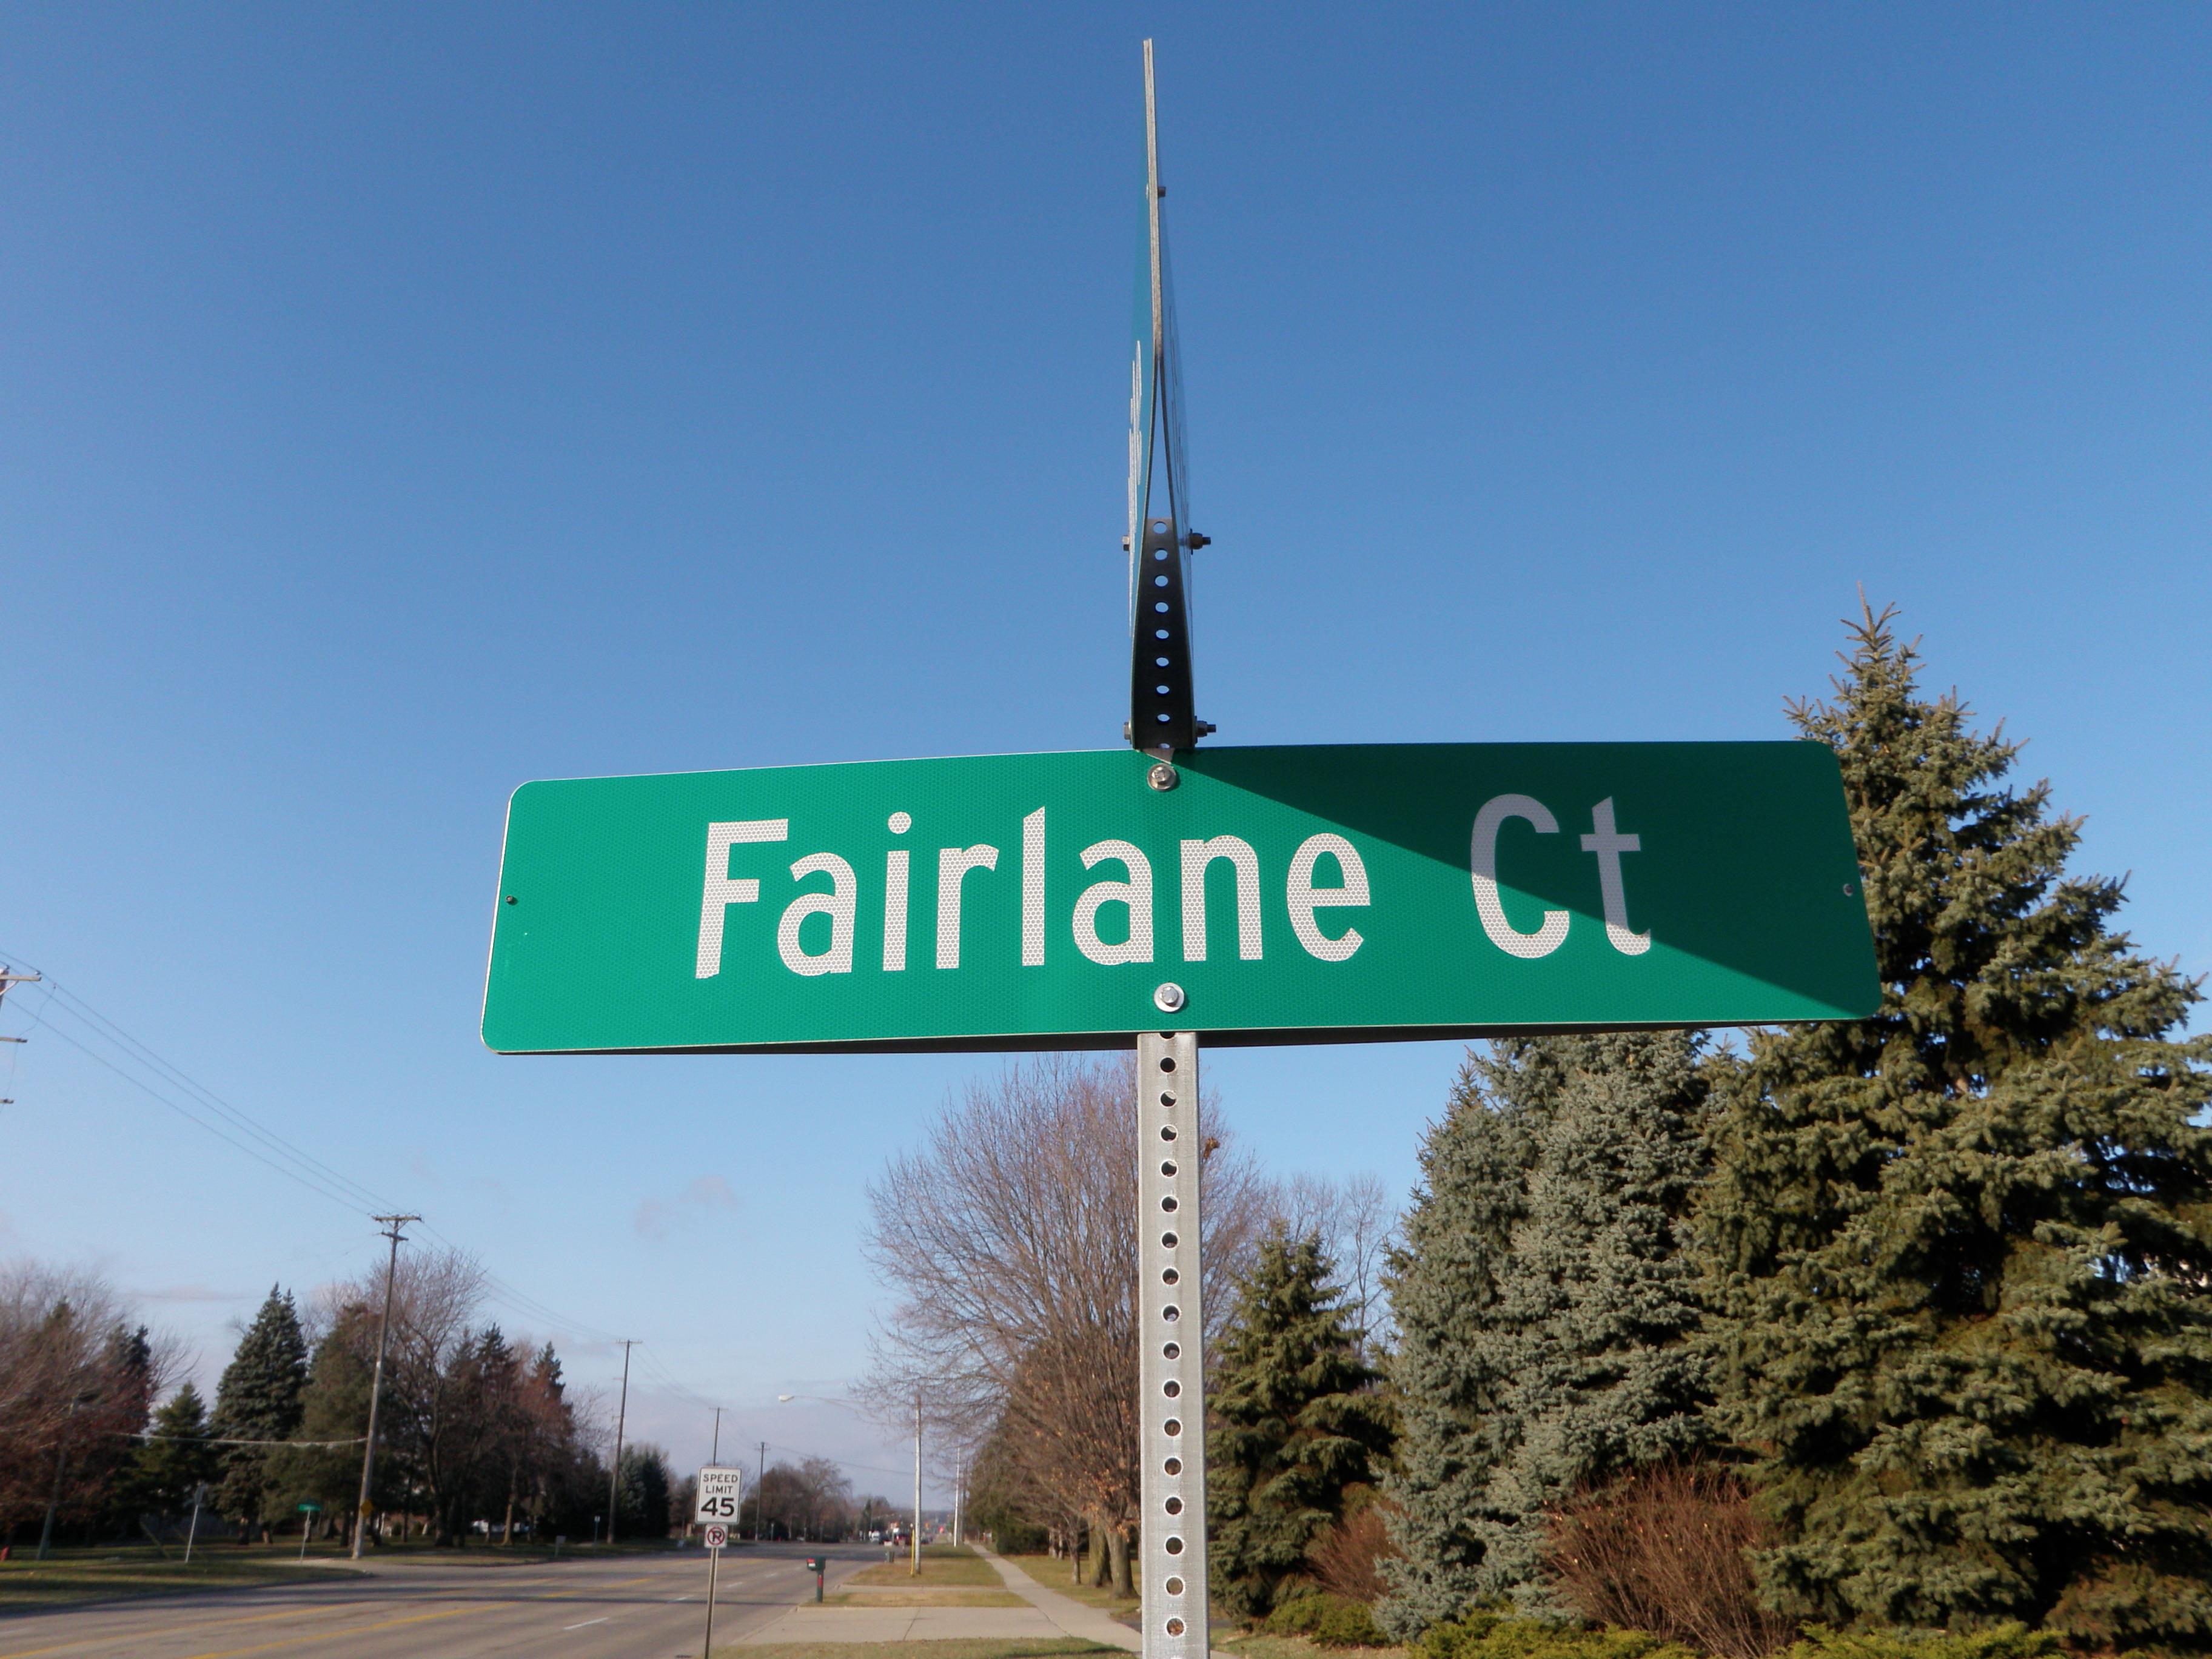 Fairlane Ct street sign livonia michigan